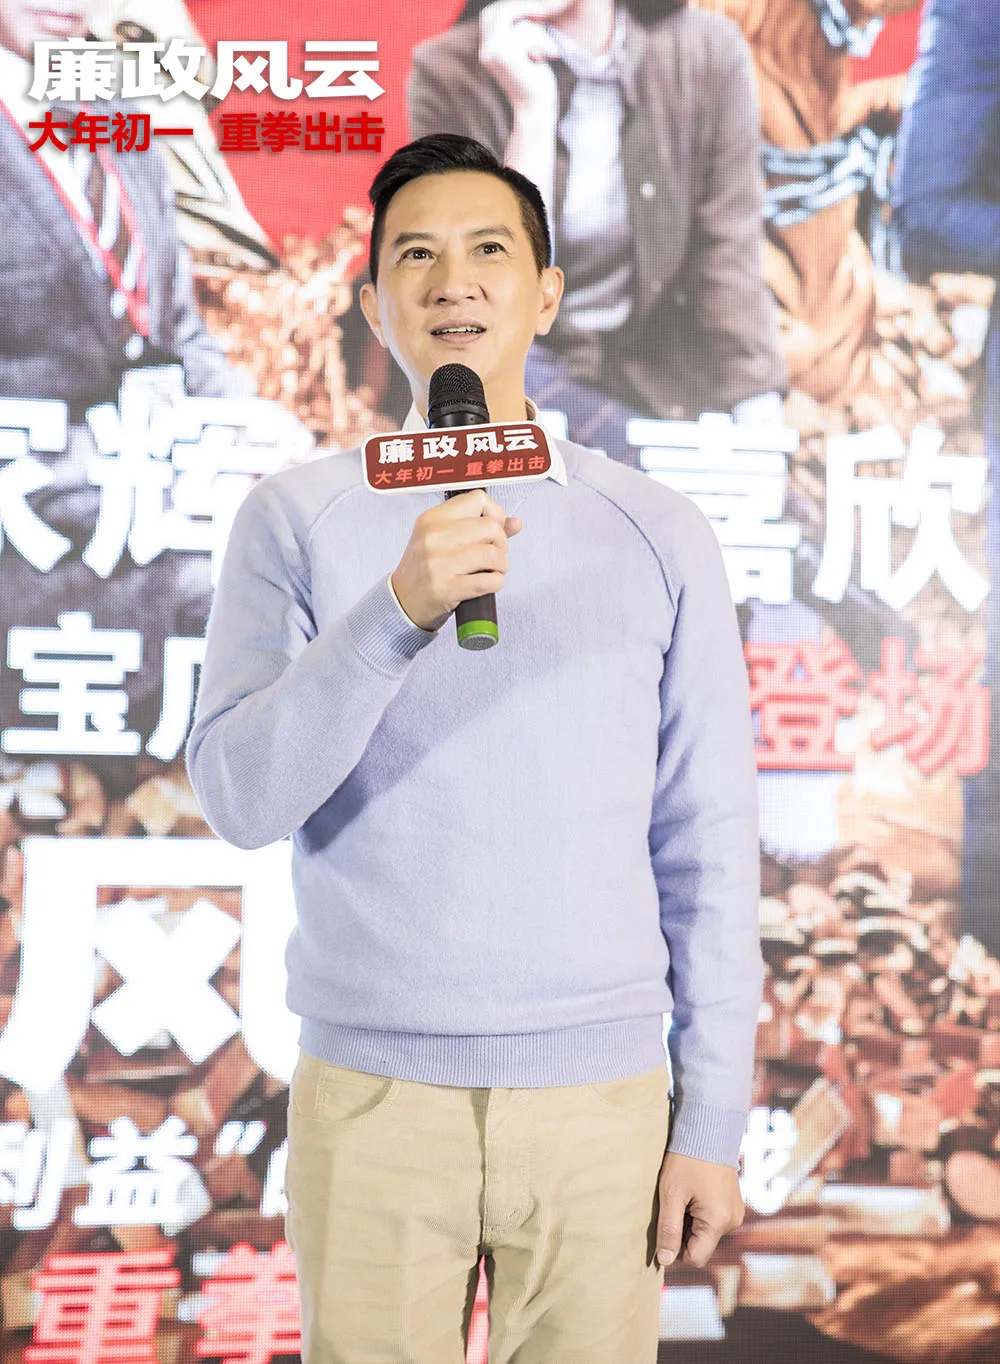  Nick Cheung 笑对苏州观众.JPG